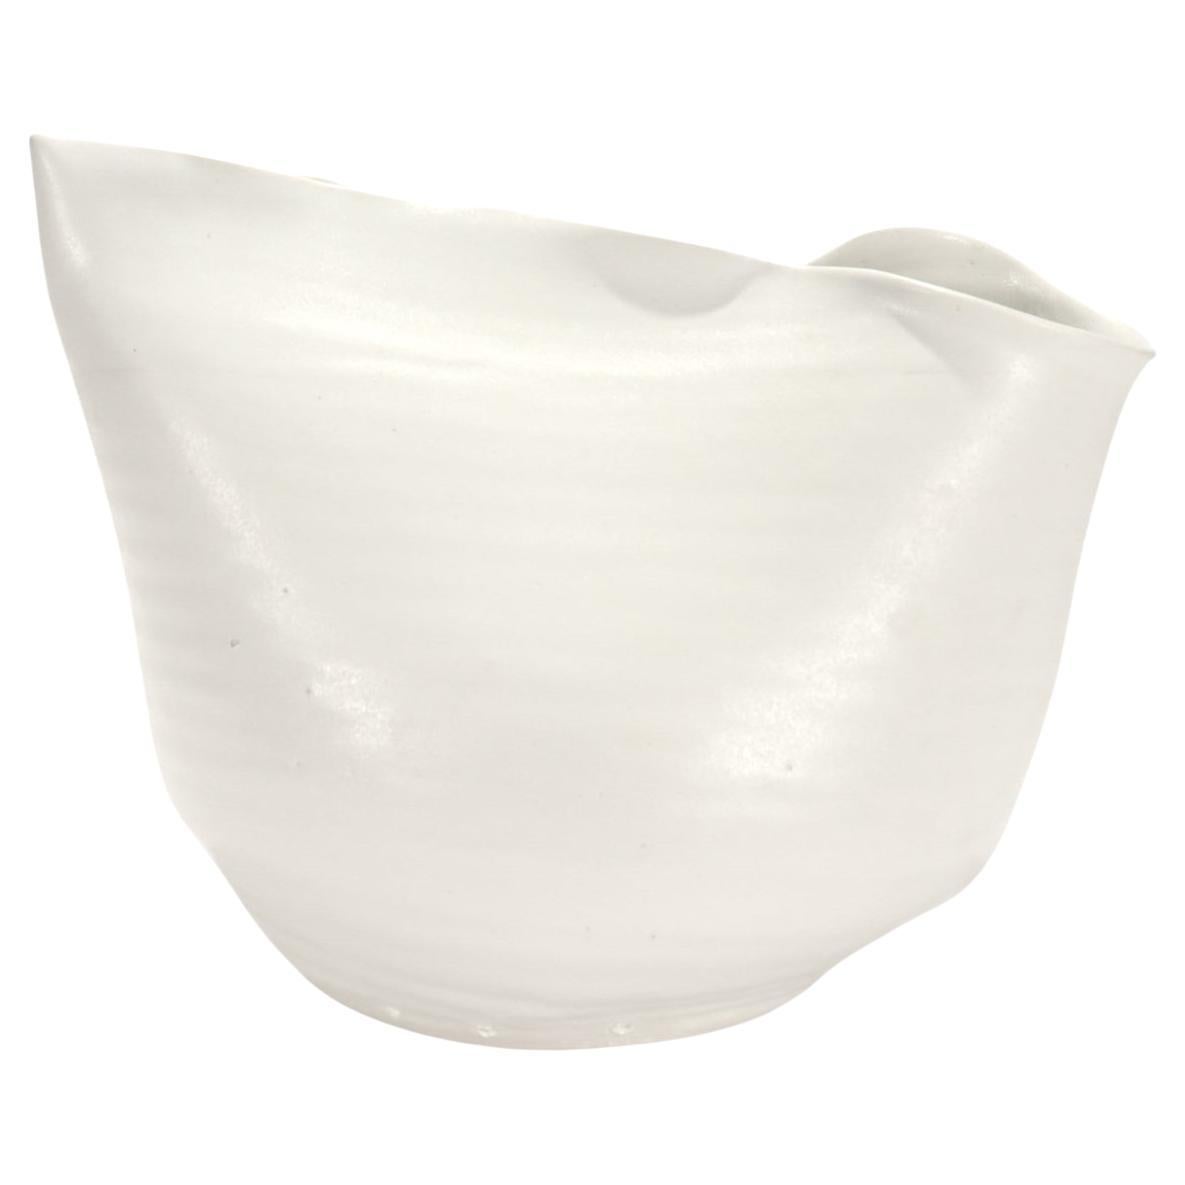 Donna Karan Lenox Signed Limited Edition Embrace Porcelain Vase / Vessel For Sale